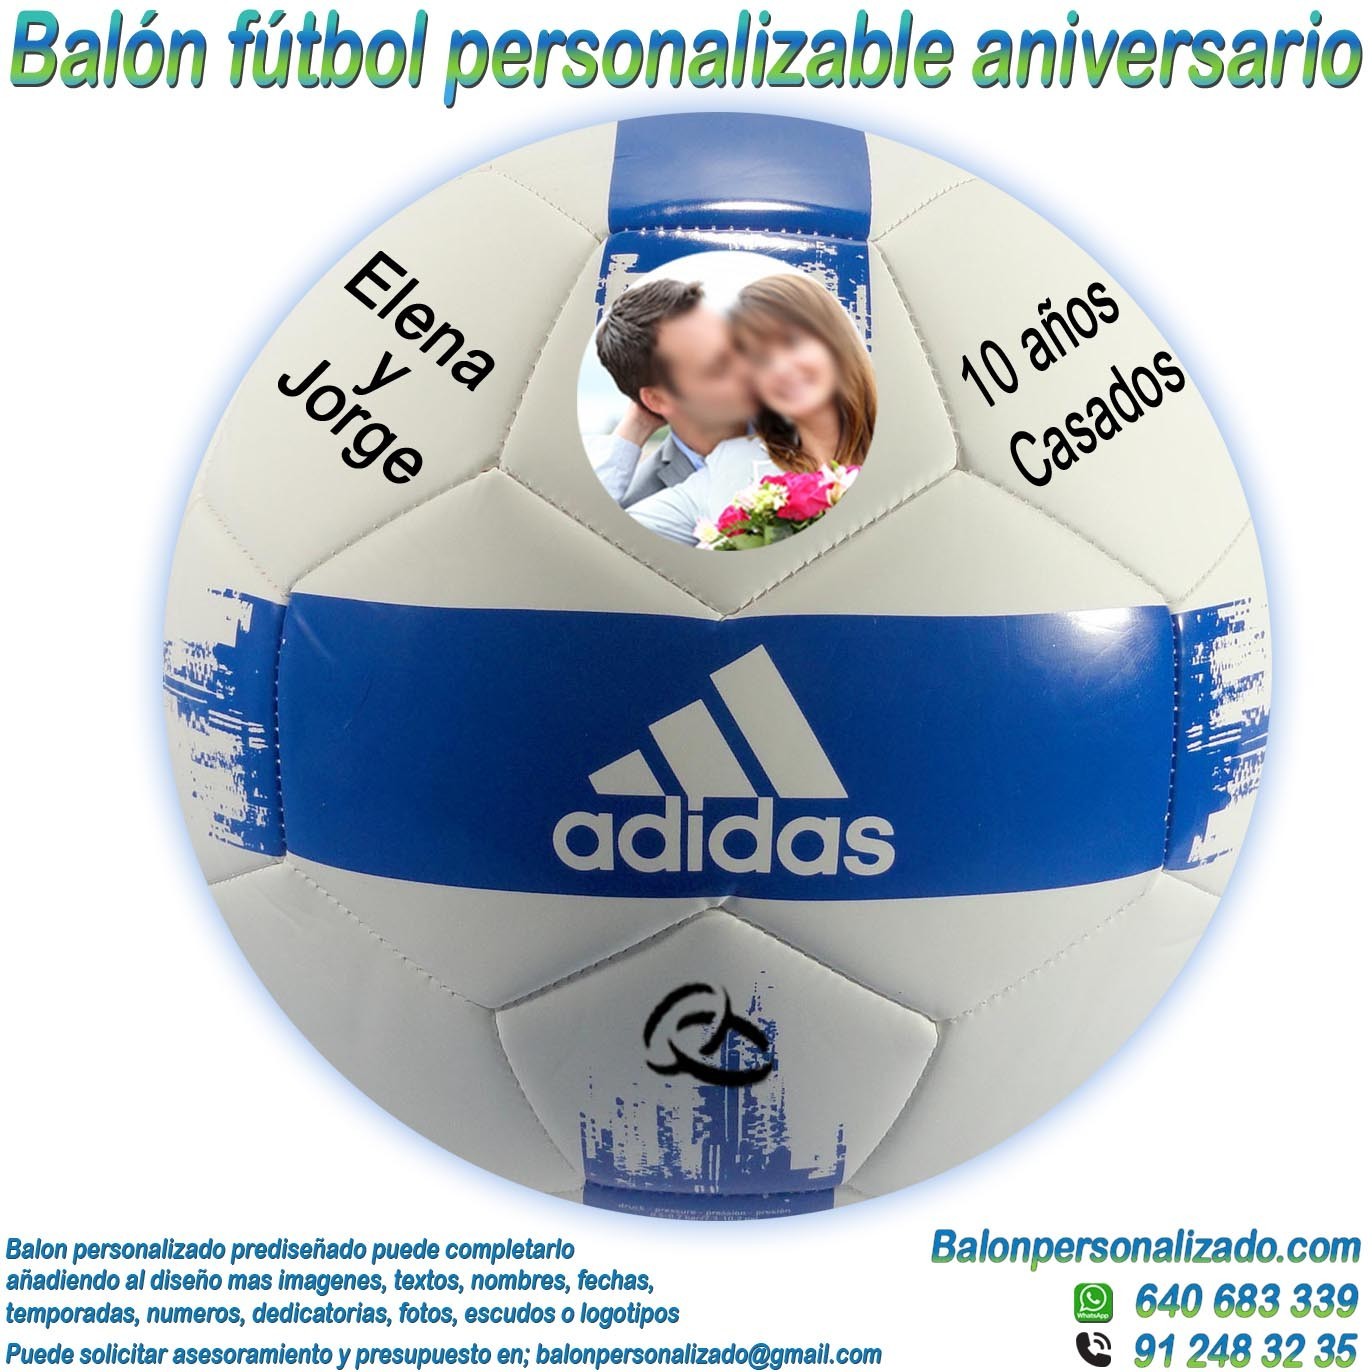 Balón Personalizable Fotos y textos de Aniversario adidas